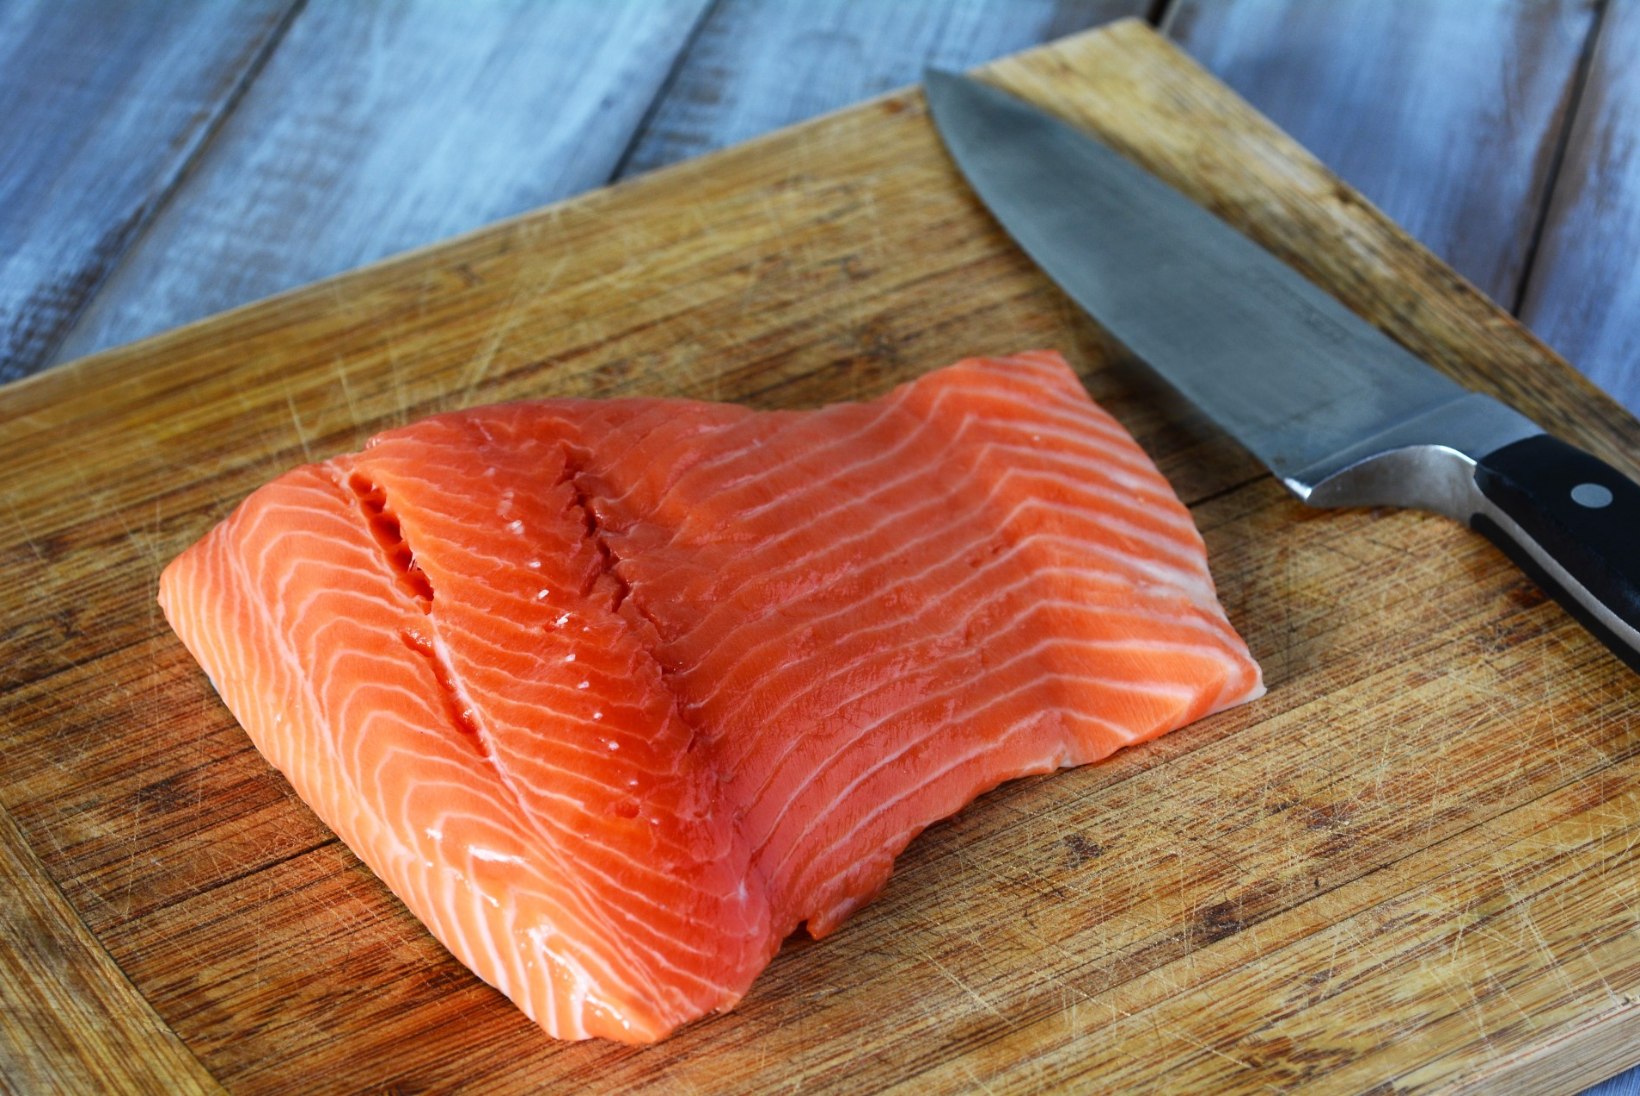 TUGEVDA IMMUUNSUST! Rasvane kala ja veel 7 toiduainet, mis  aitavad haigustele paremini vastu panna!